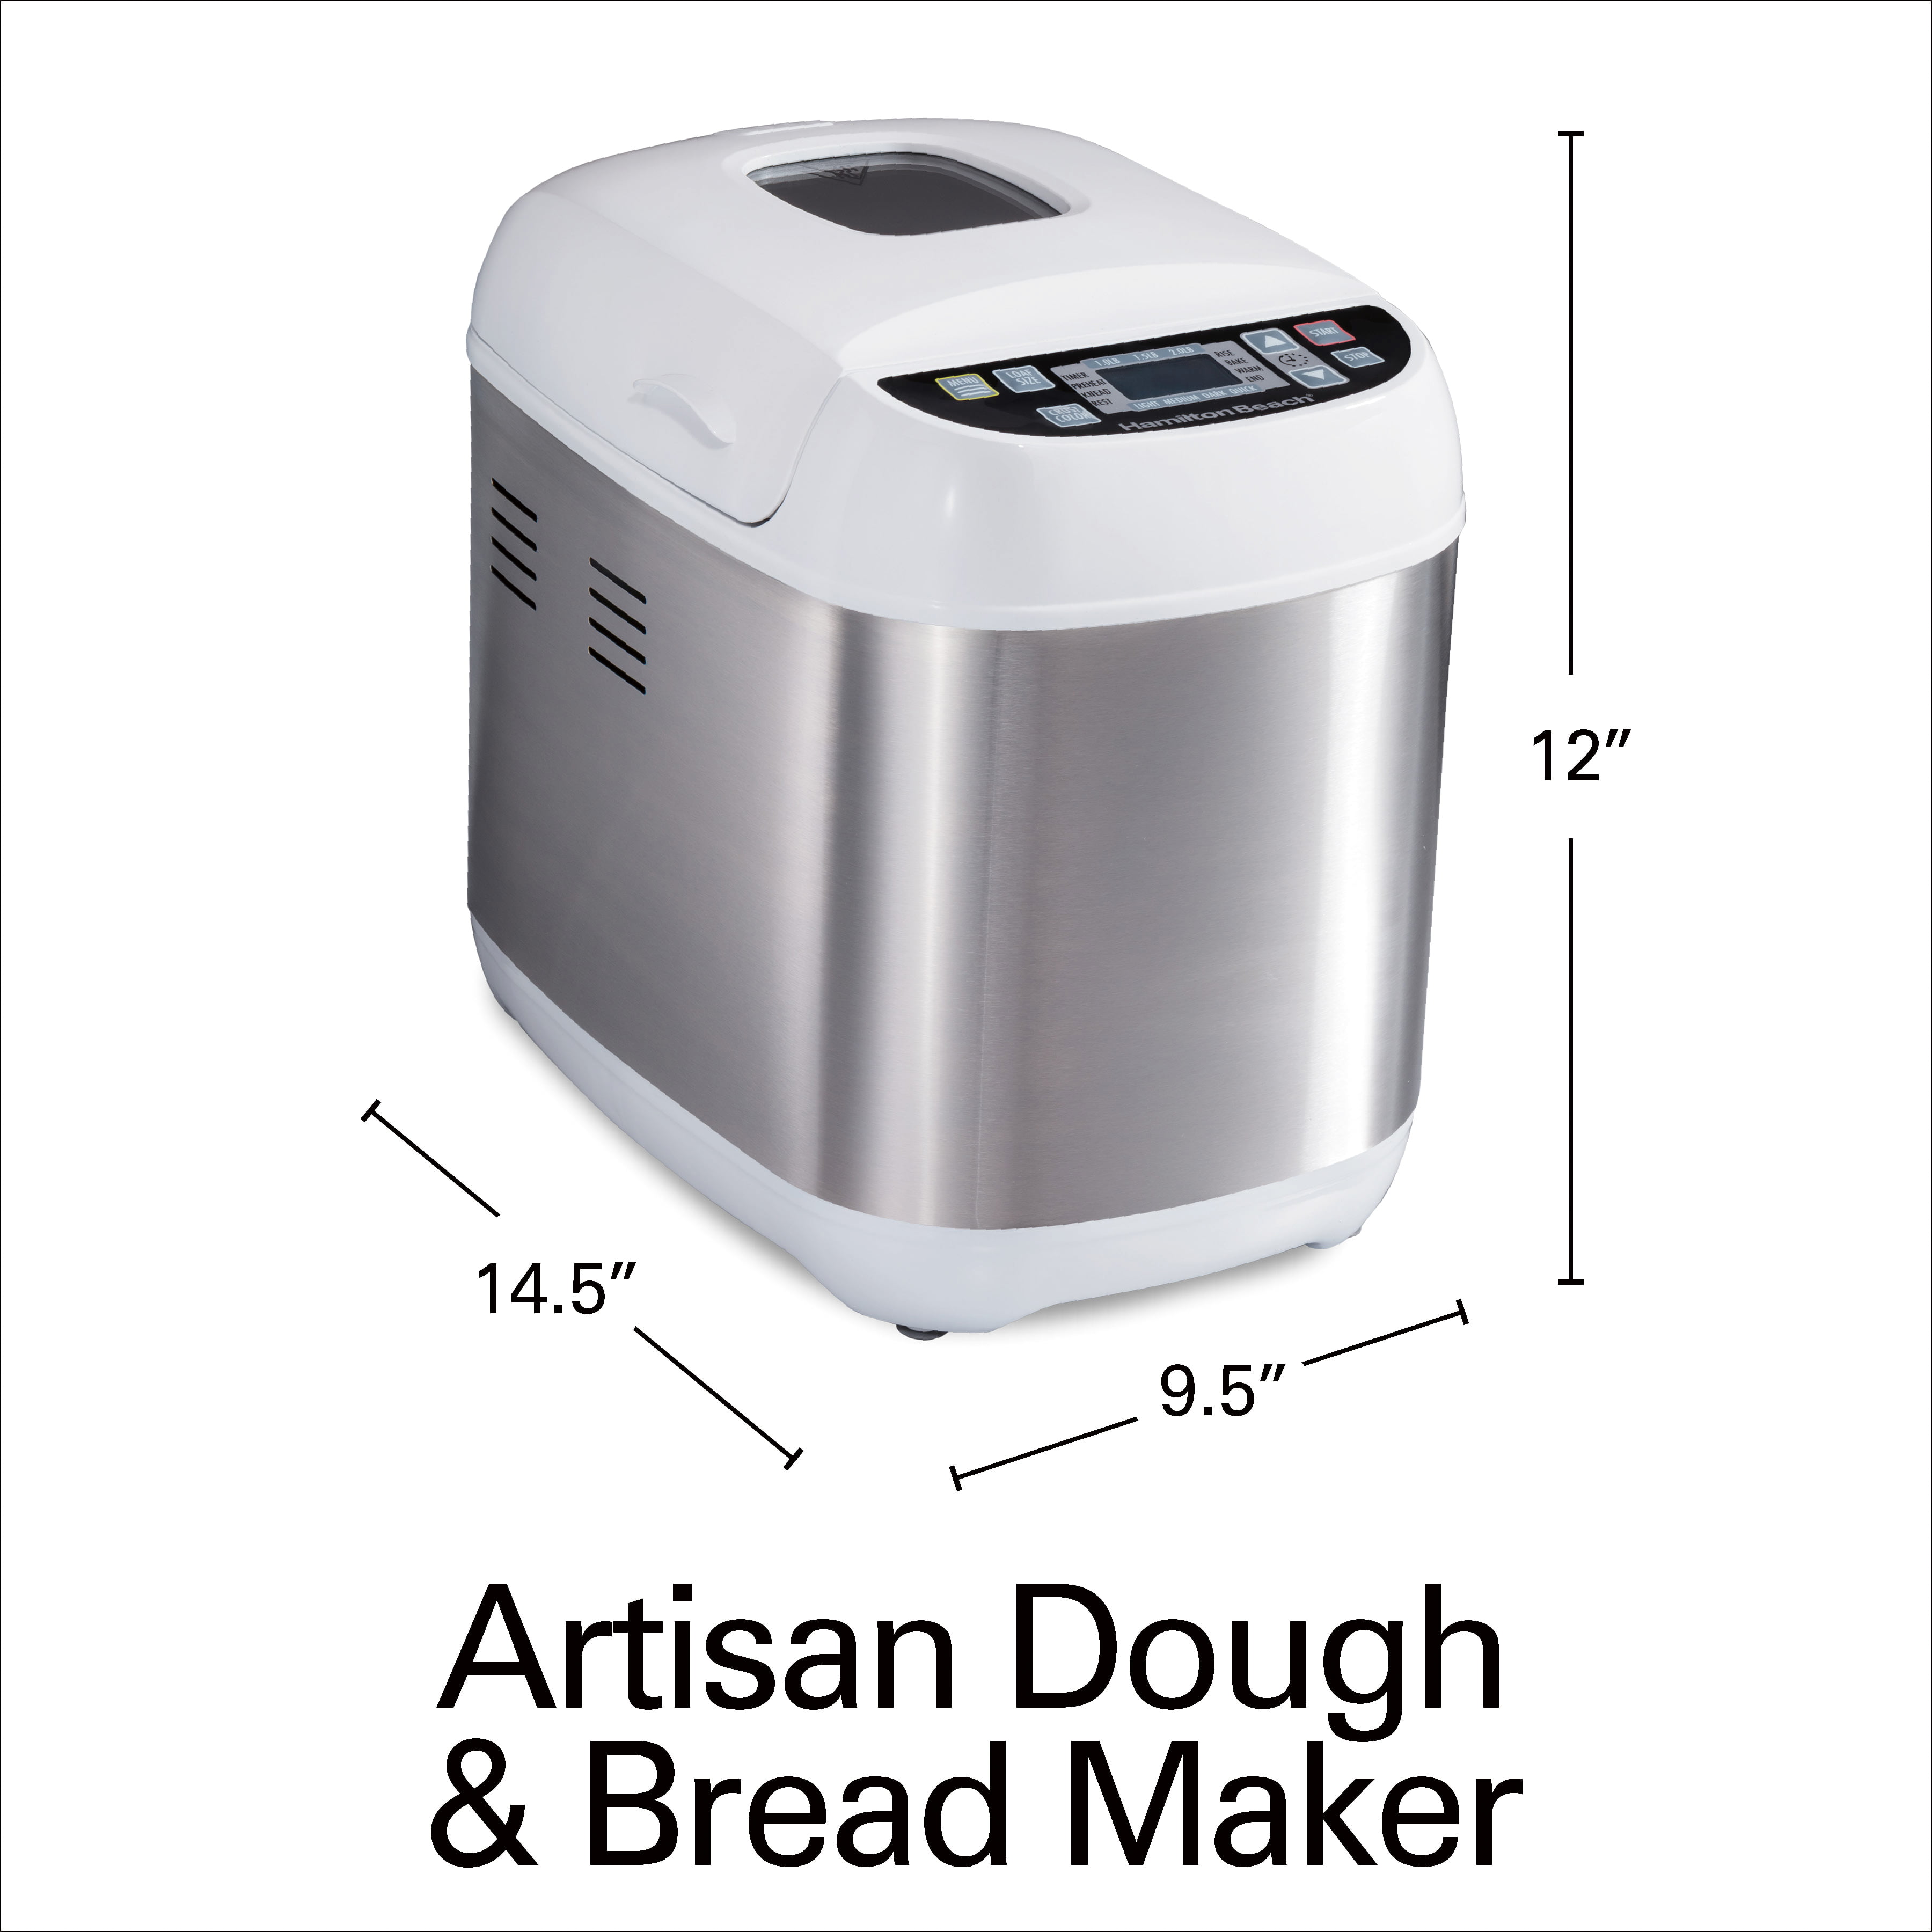 Artisan Dough & Bread Maker, Stainless Steel - 29985